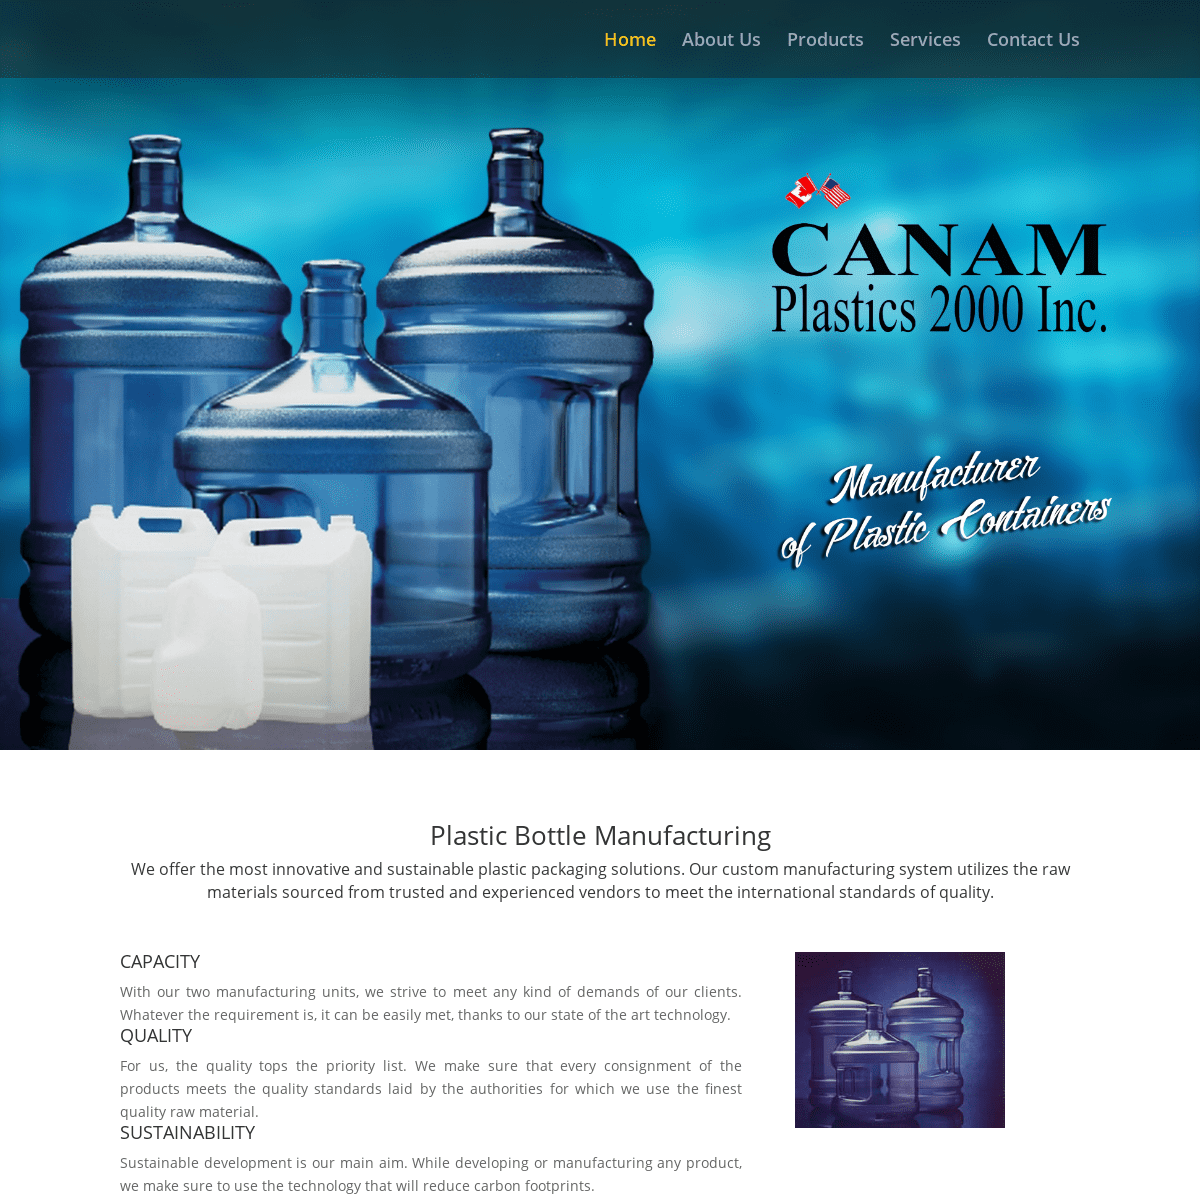 Canam Plastics - Manufacturer of Plastic Containers